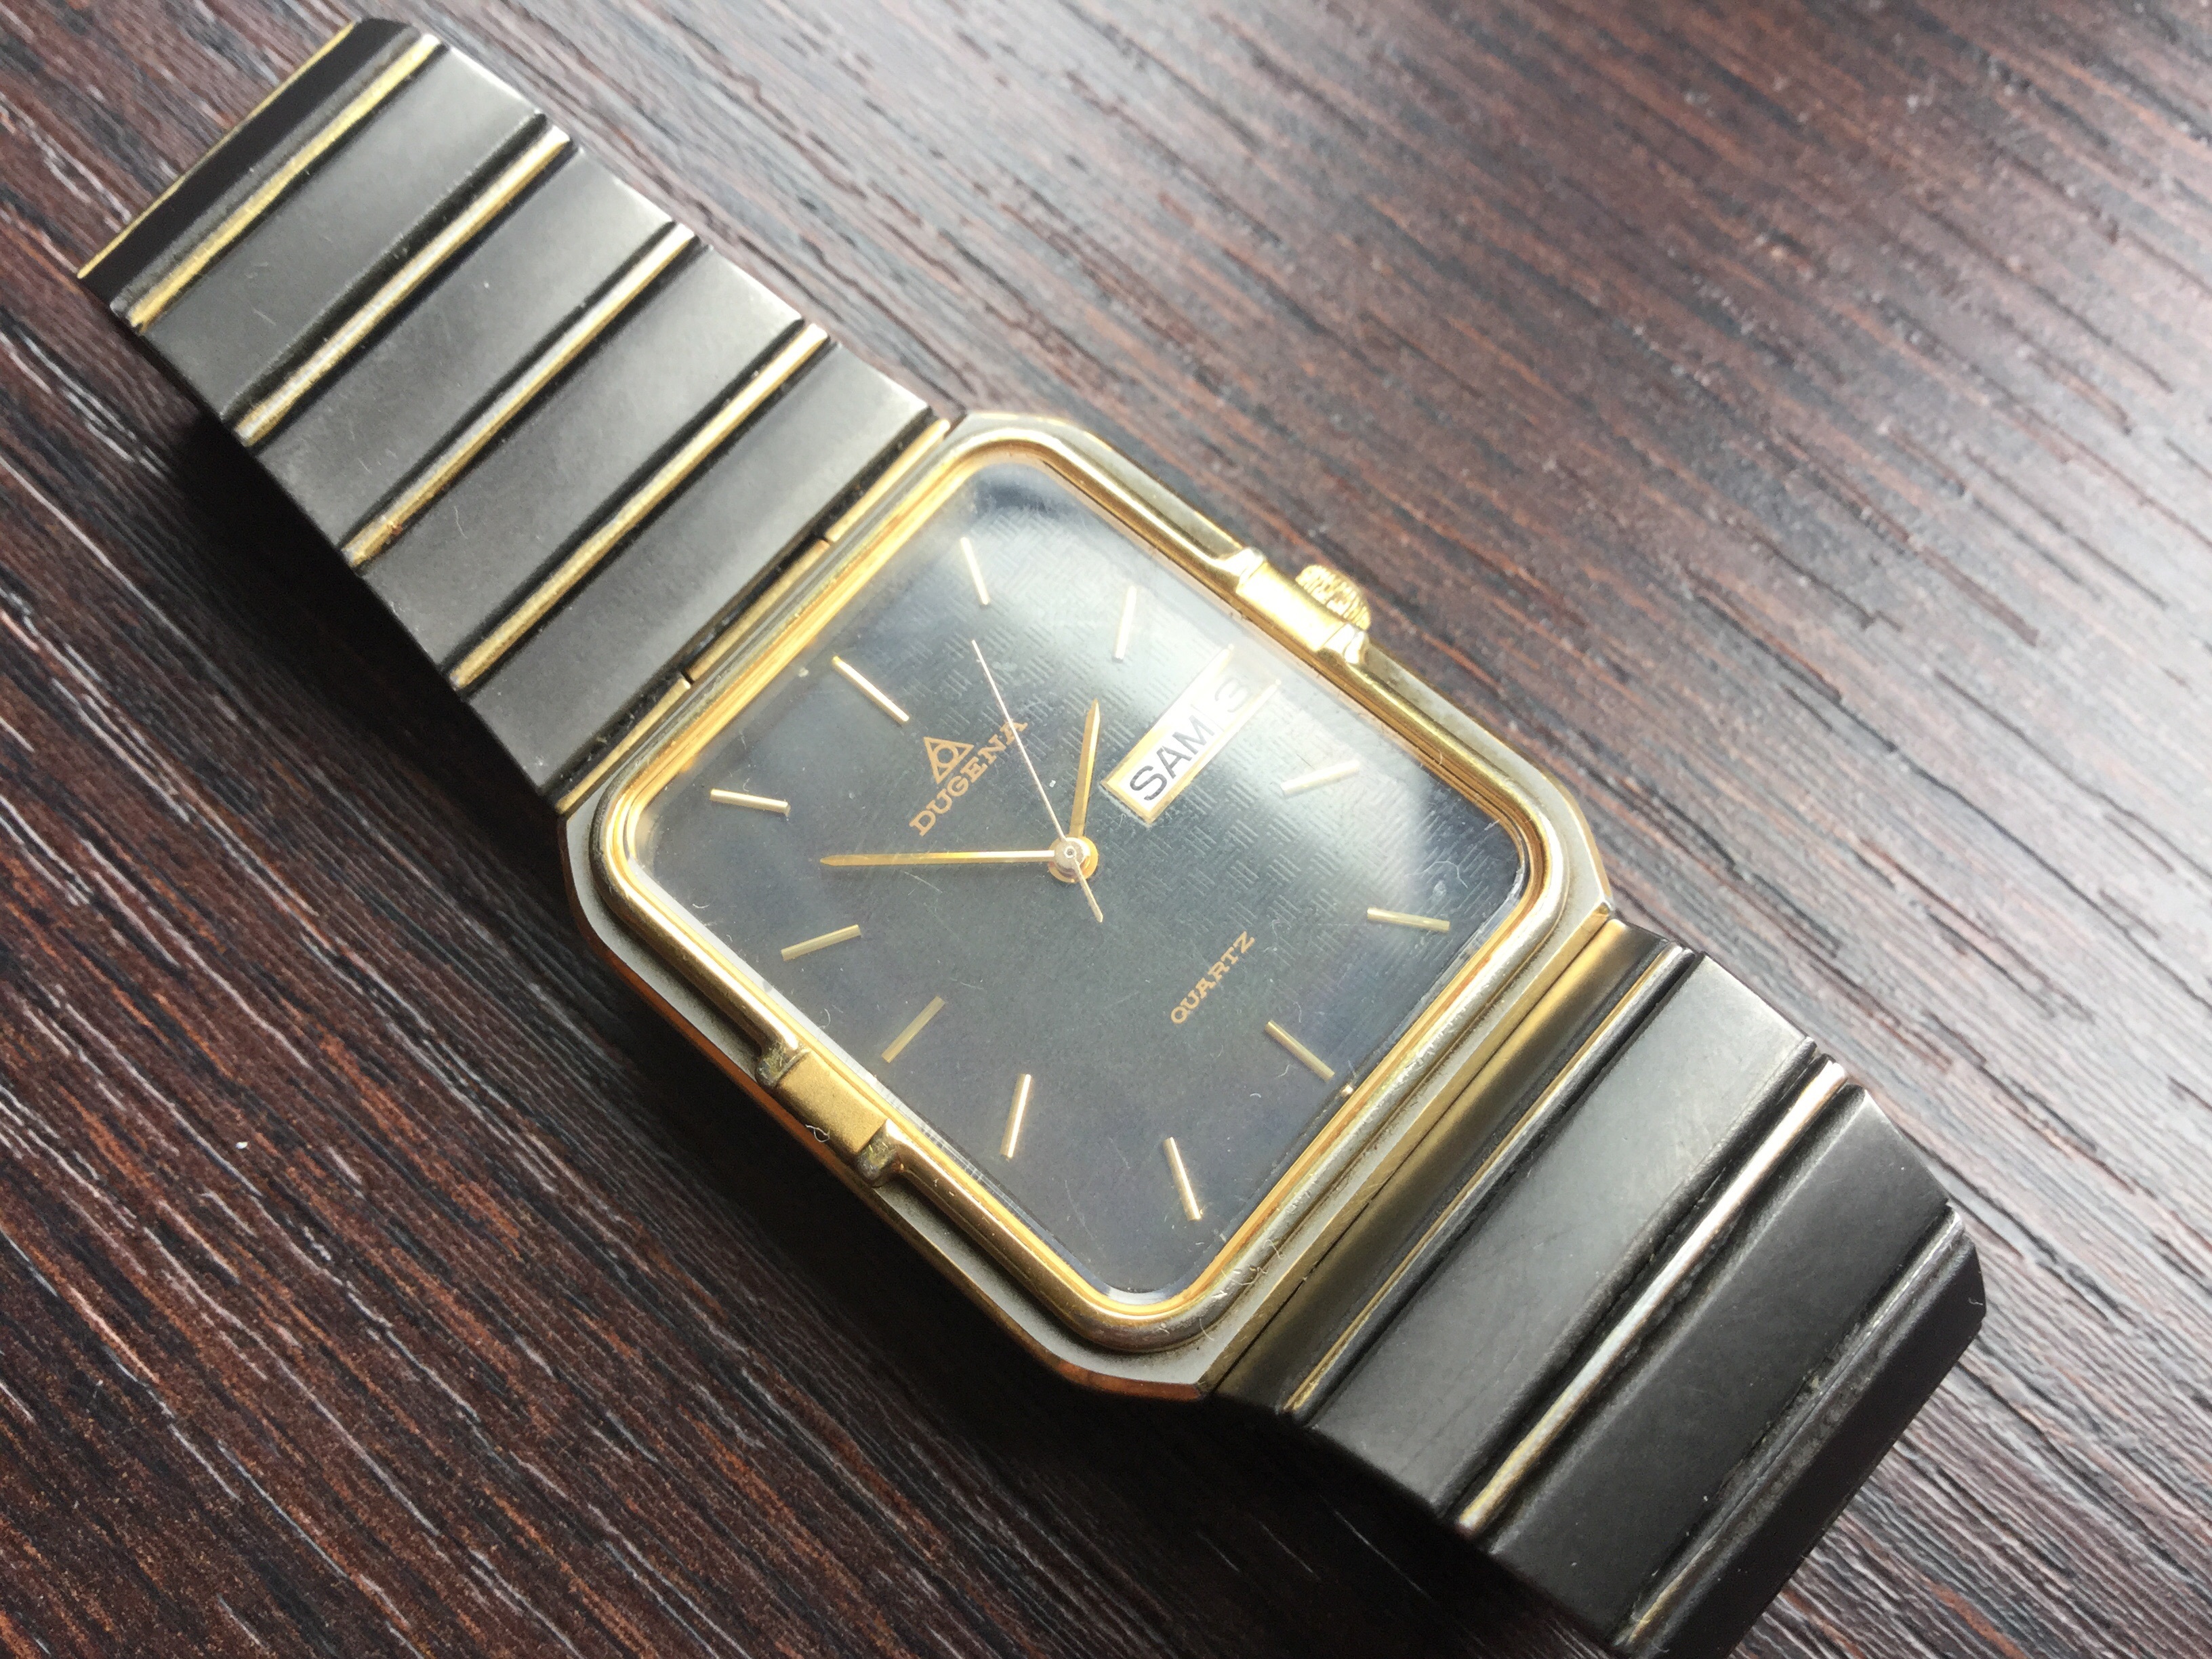 Vintage Dugena horloge - Jaren 80 Bi Colour - VERKOCHT - Horlogemarkt (archief) - Horlogeforum.nl het forum voor liefhebbers van horloges